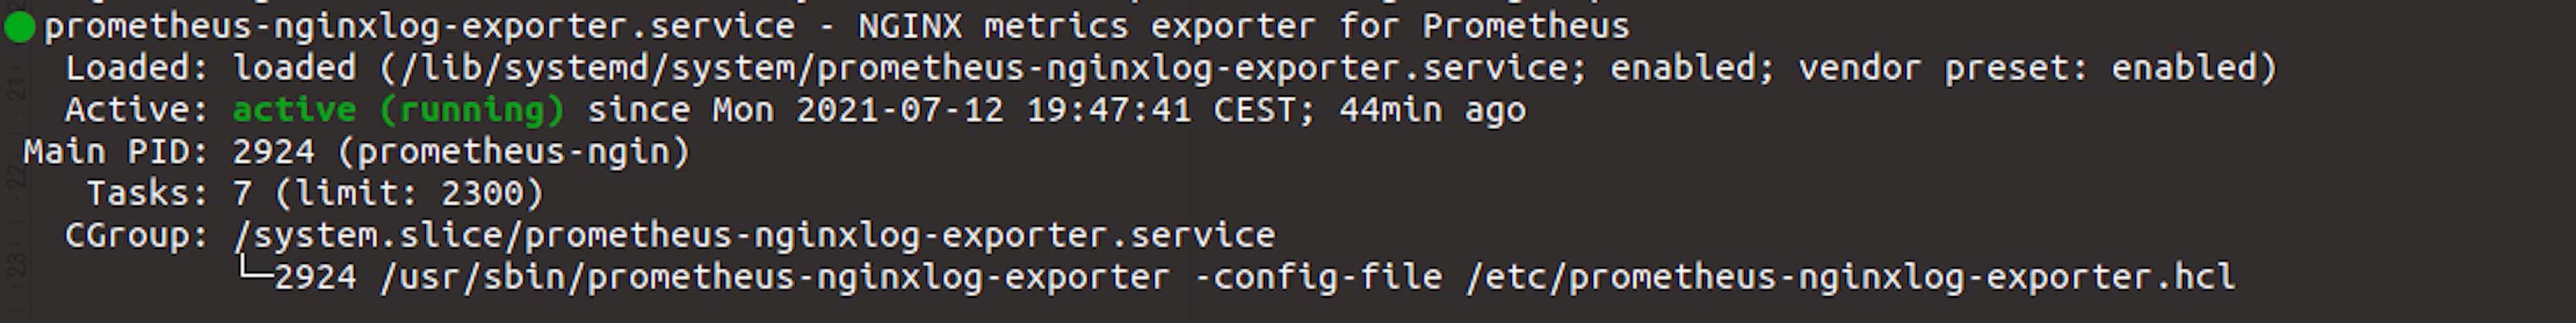 output of "systemctl status prometheus-nginxlog-exporter"